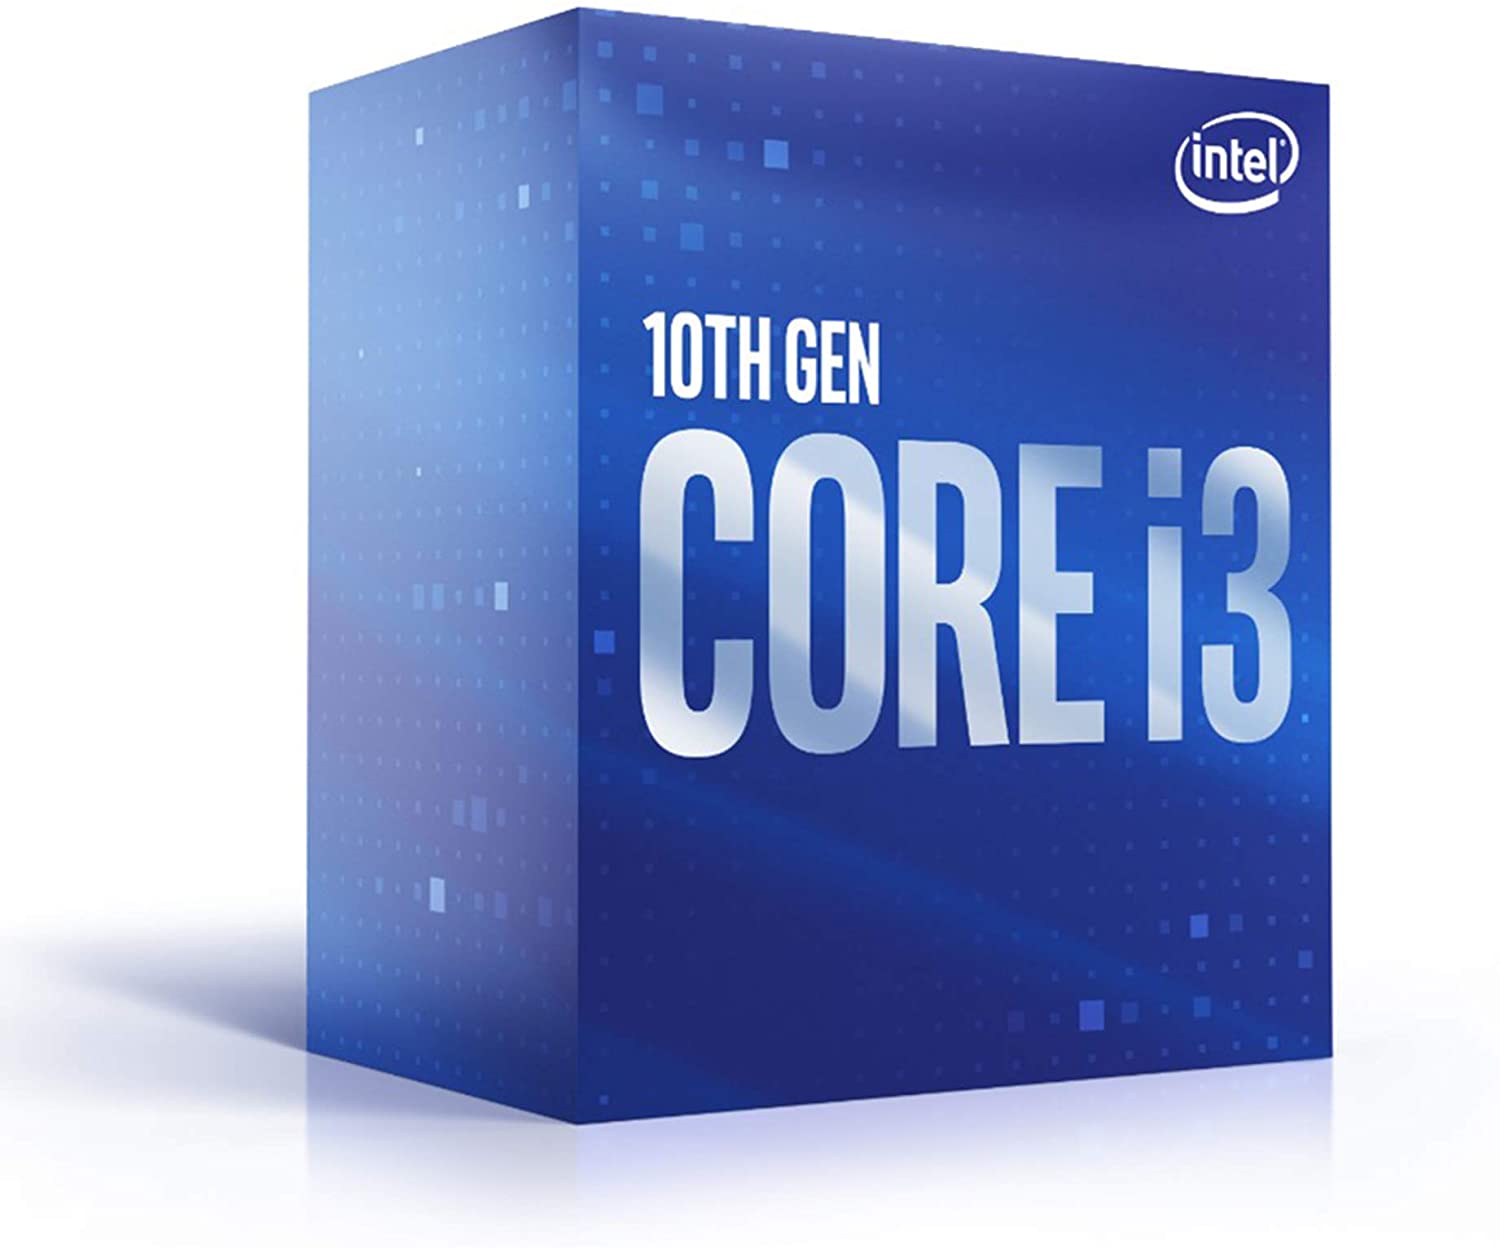 Processore Core i3-10100 Coffee lake a 3.6GHz e con 6MB di cache intelligente foto 2